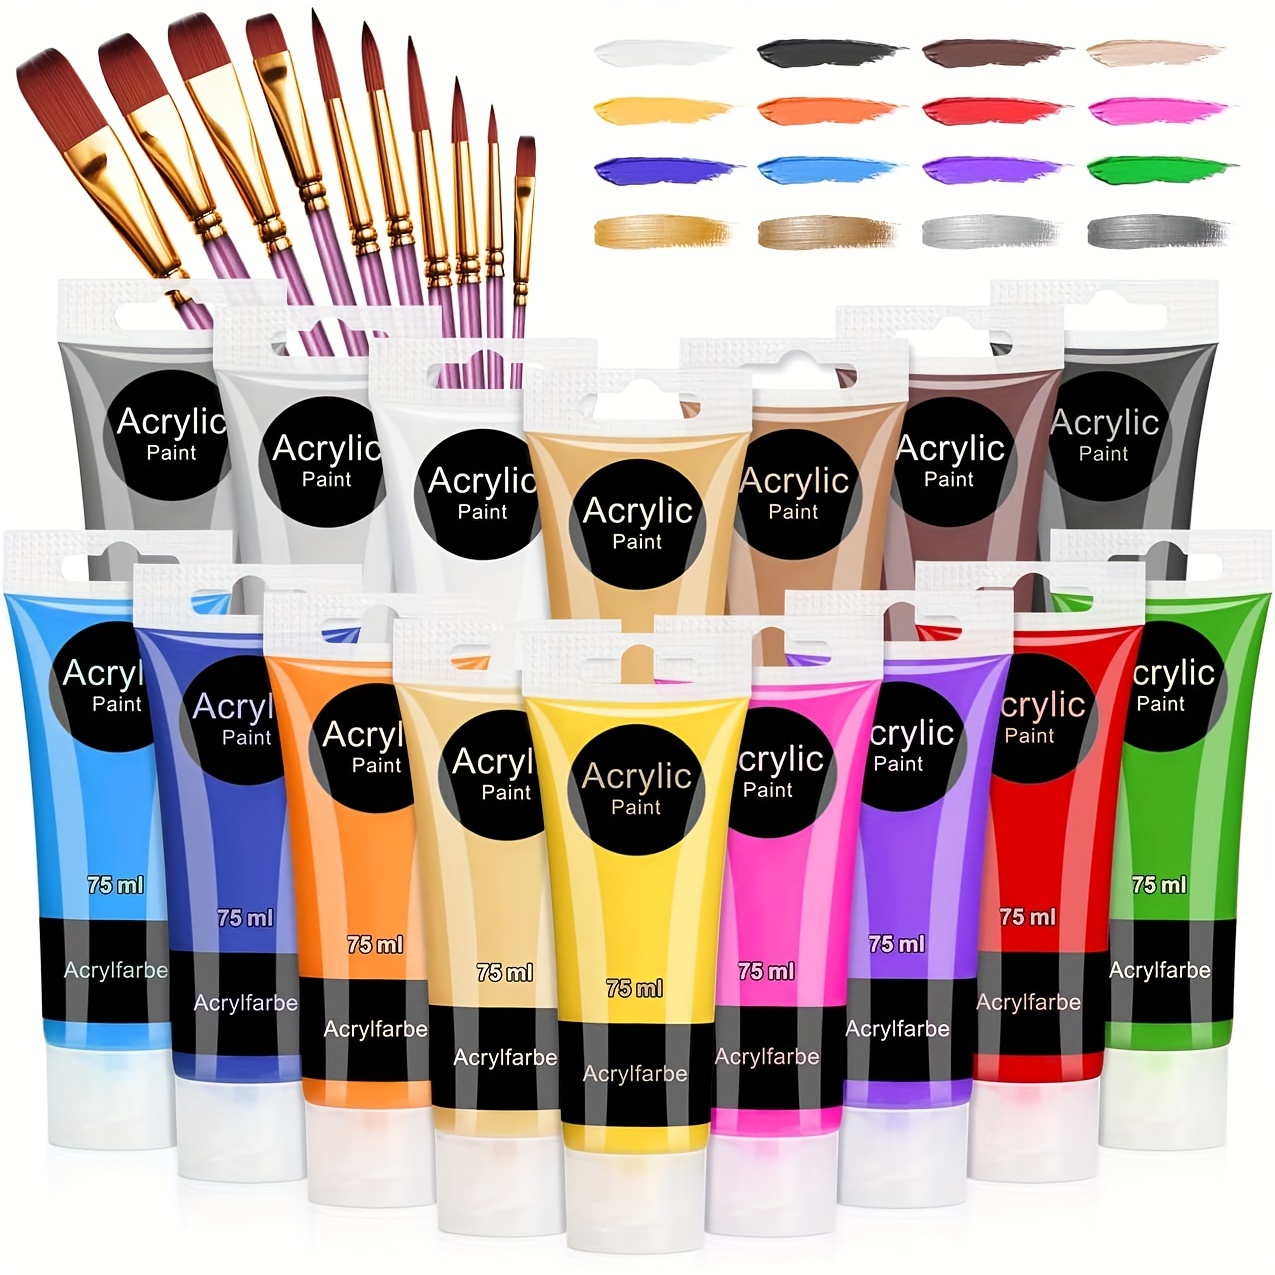 6 Colors Acrylic Paint Set For Diy Art Painting And Doodling On Fan,  Gypsum, Etc. (6pcs Acrylic Paints + 1pc Paint Brush) Light Color